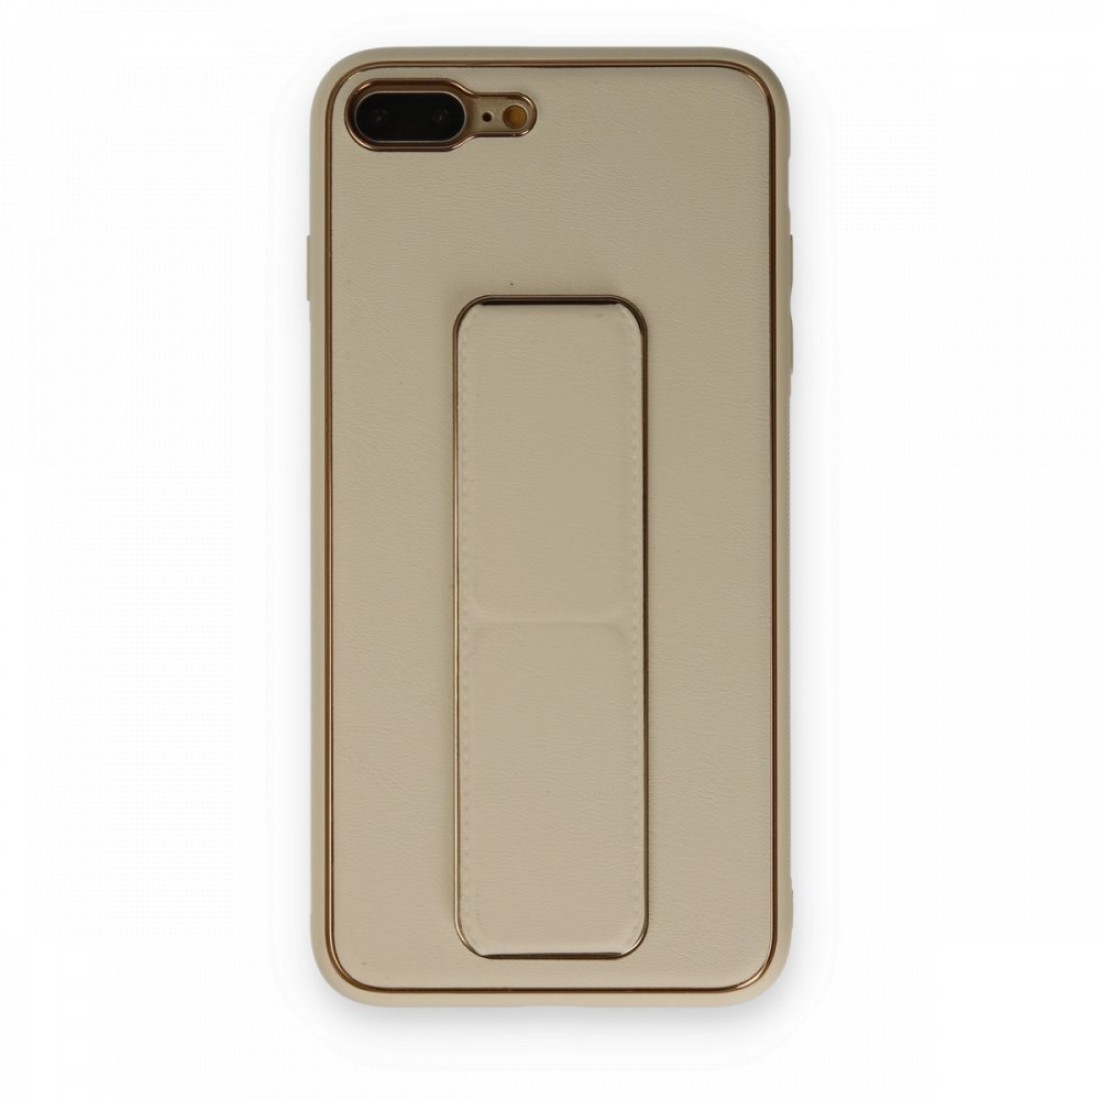 Apple iPhone 7 Plus Kılıf Coco Deri Standlı Kapak - Gold